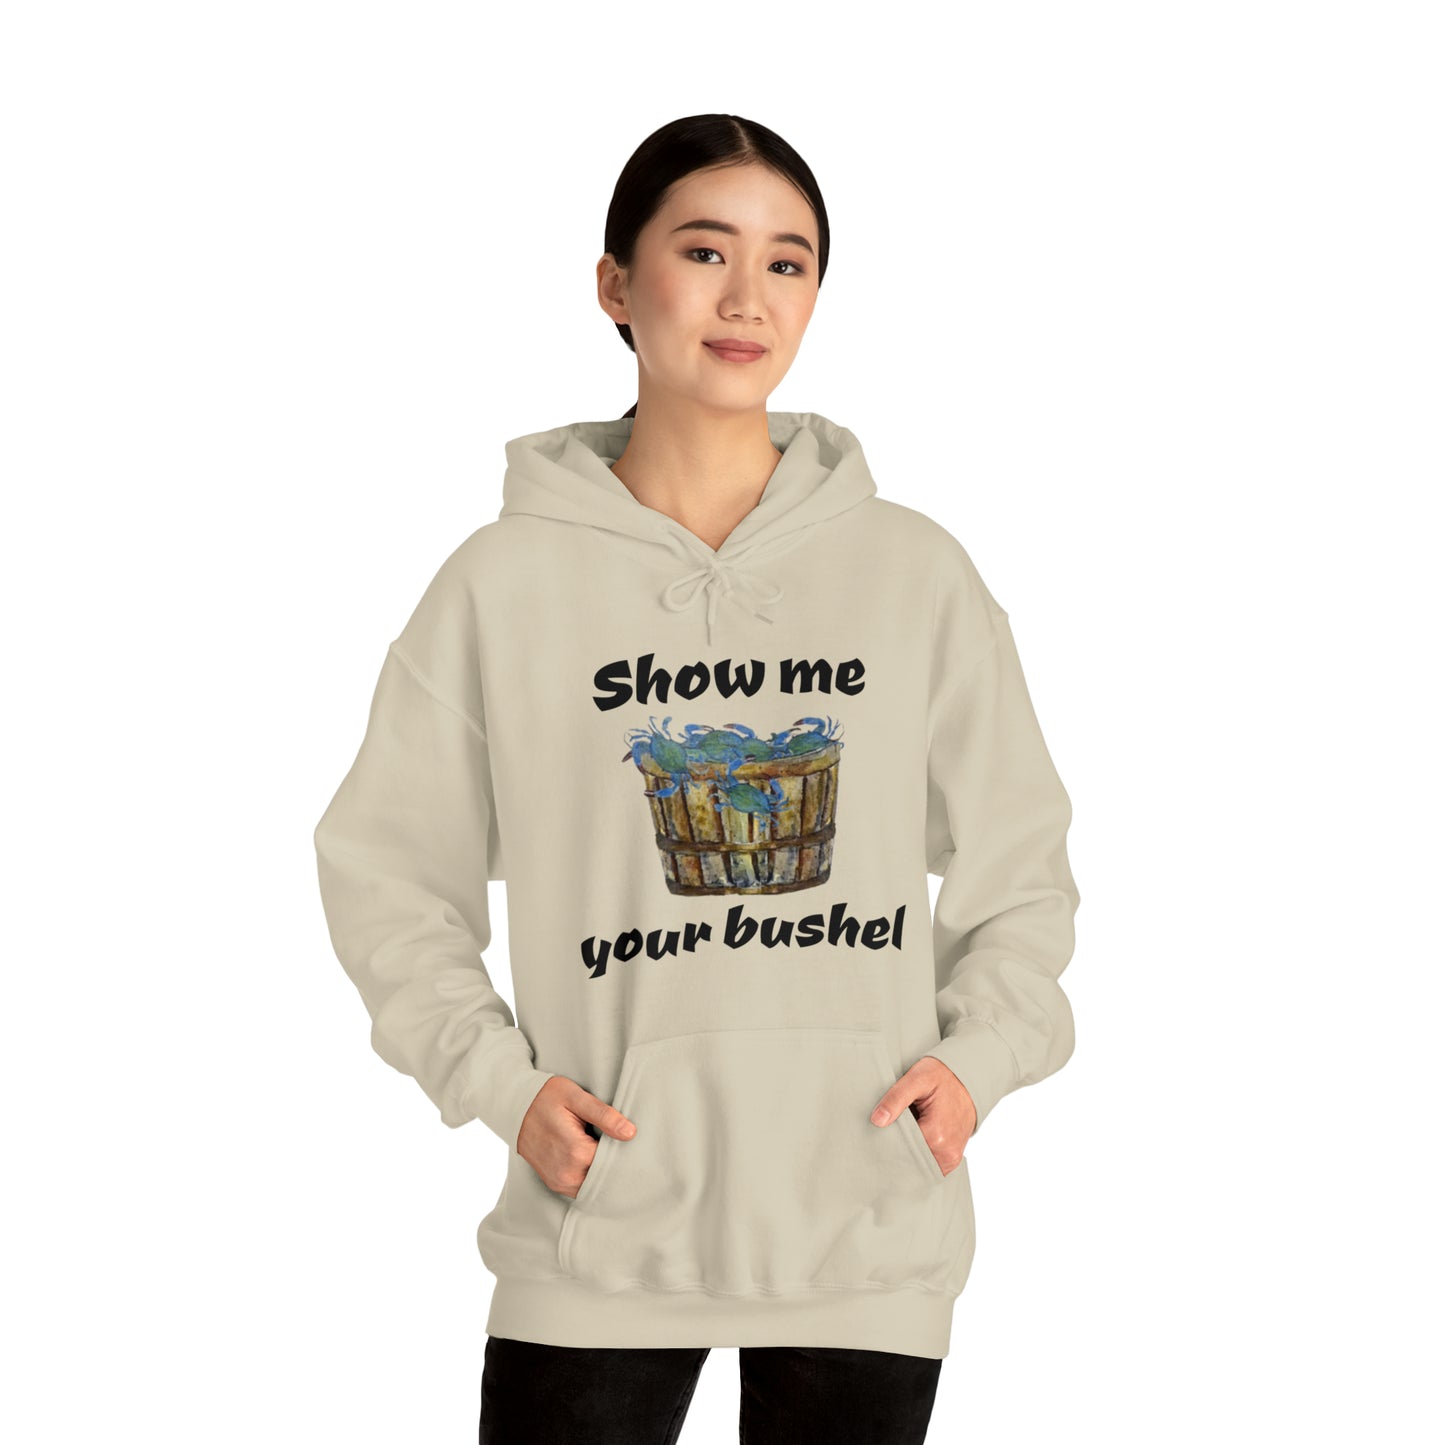 Show me your bushel Hooded Sweatshirt